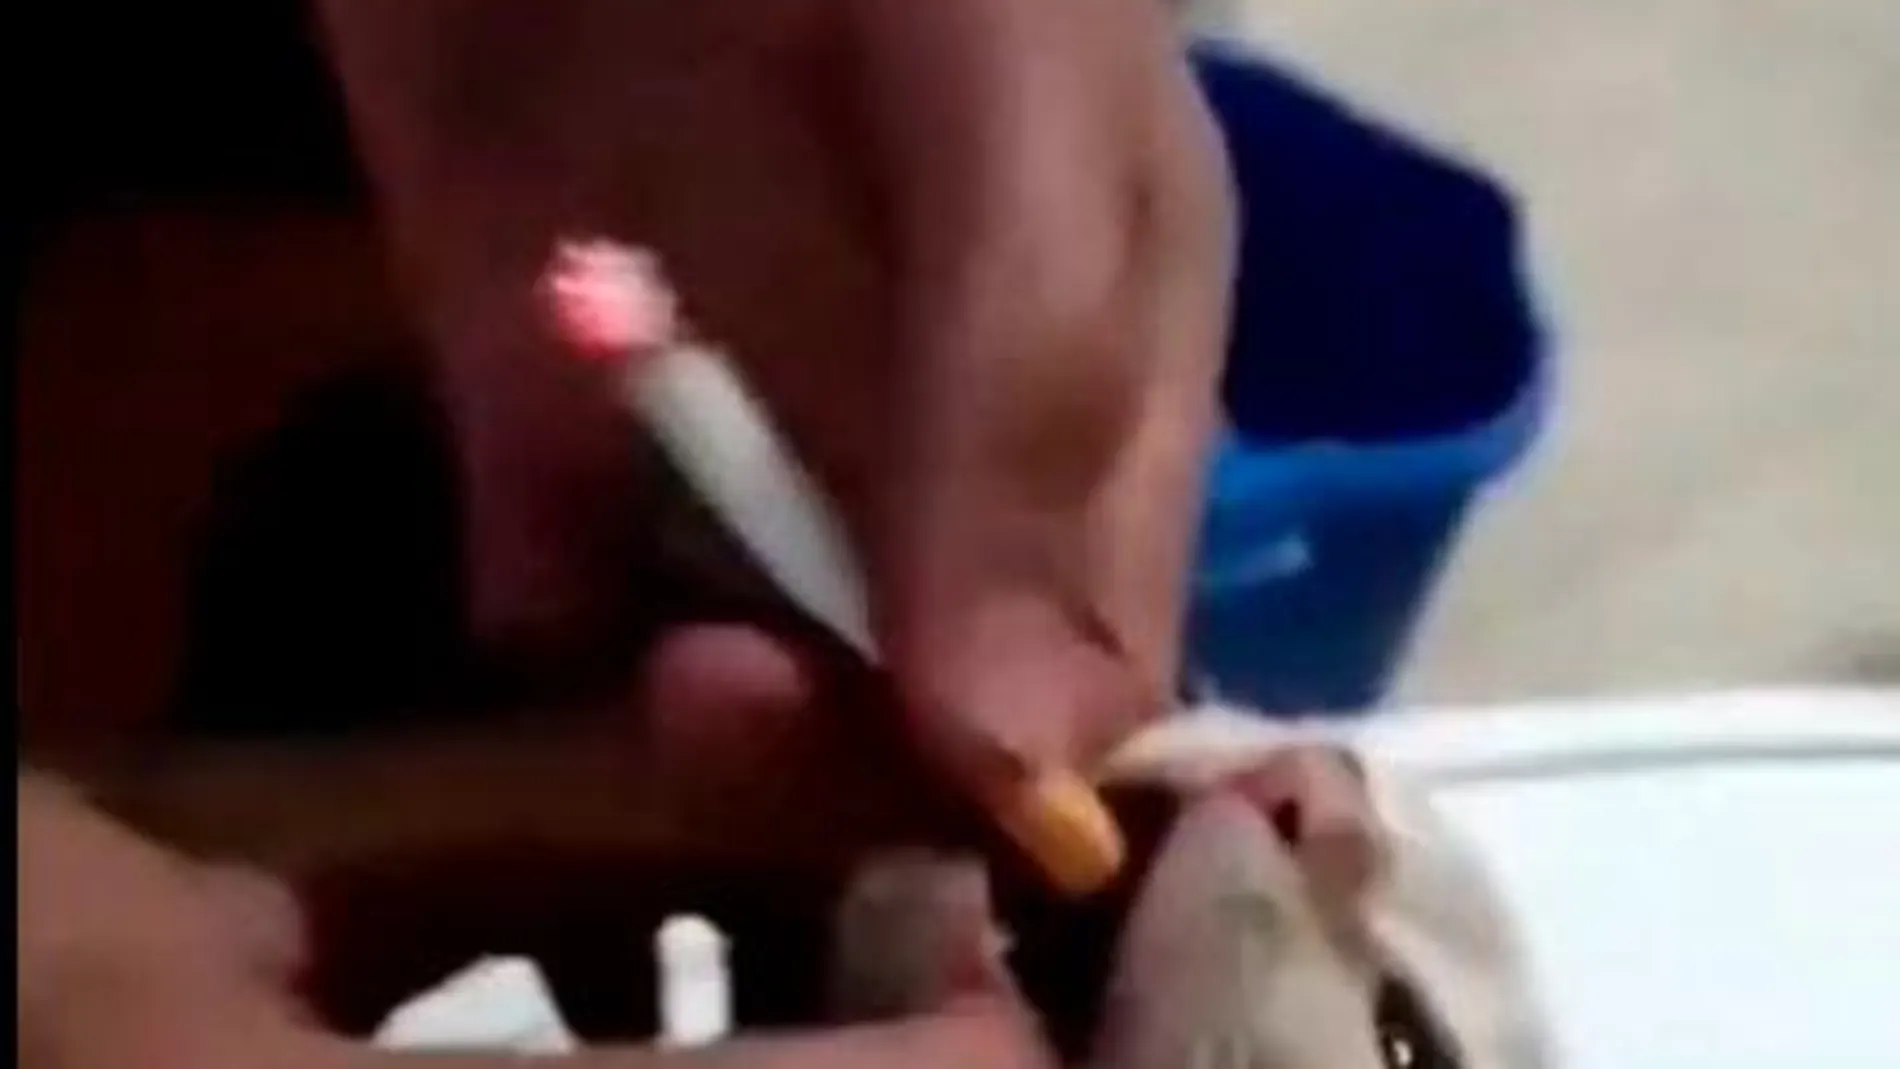 Nuevo caso de maltrato: unos jóvenes difunden un vídeo en el que obligan a fumar a un gato